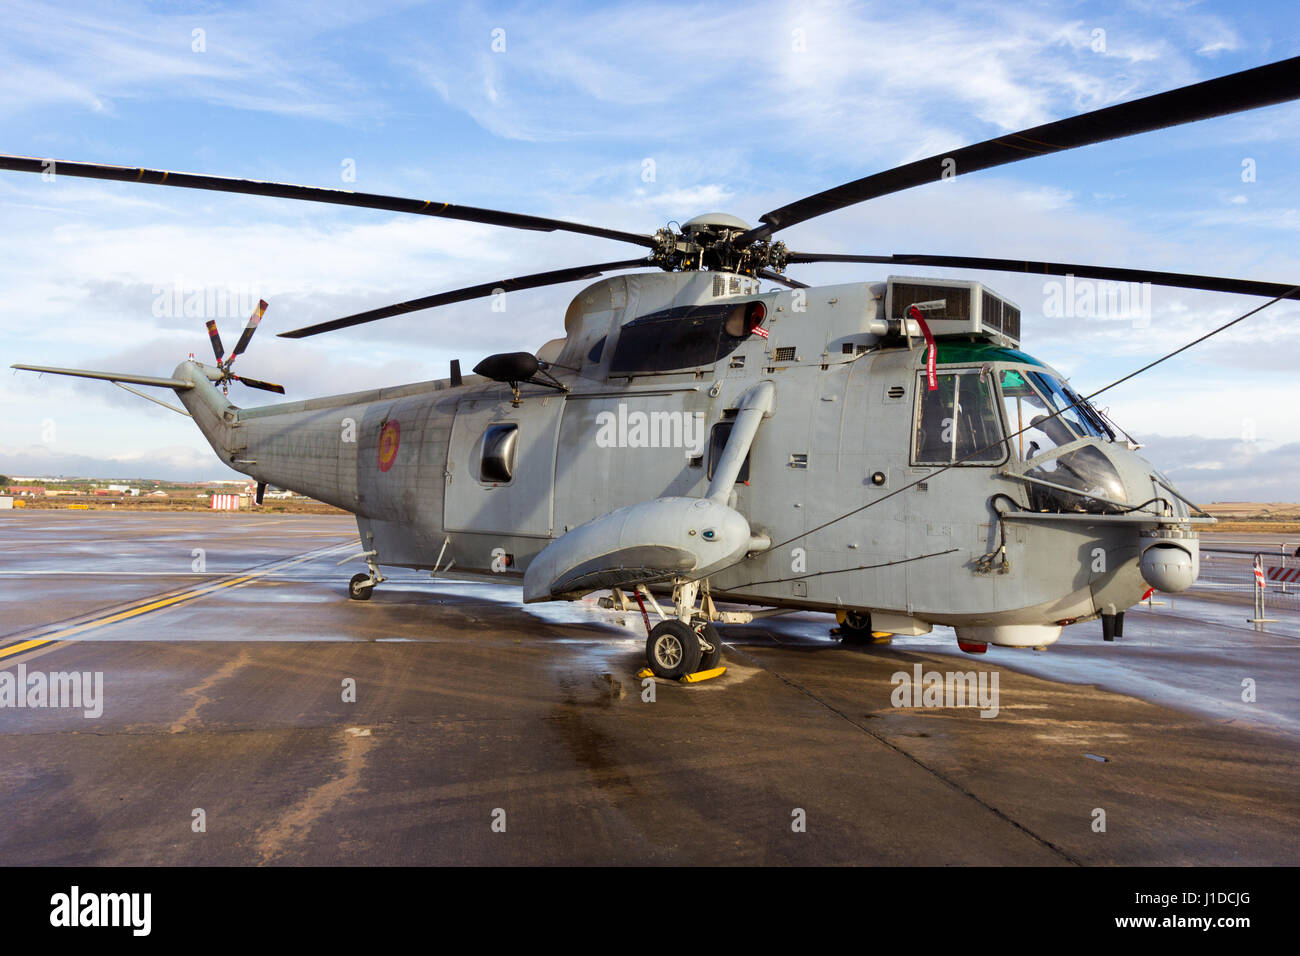 TORREJON, ESPAGNE - OCT 11, 2014 : la marine espagnole Sikorsky SH-3D de sauvetage par hélicoptère Sea King. Banque D'Images